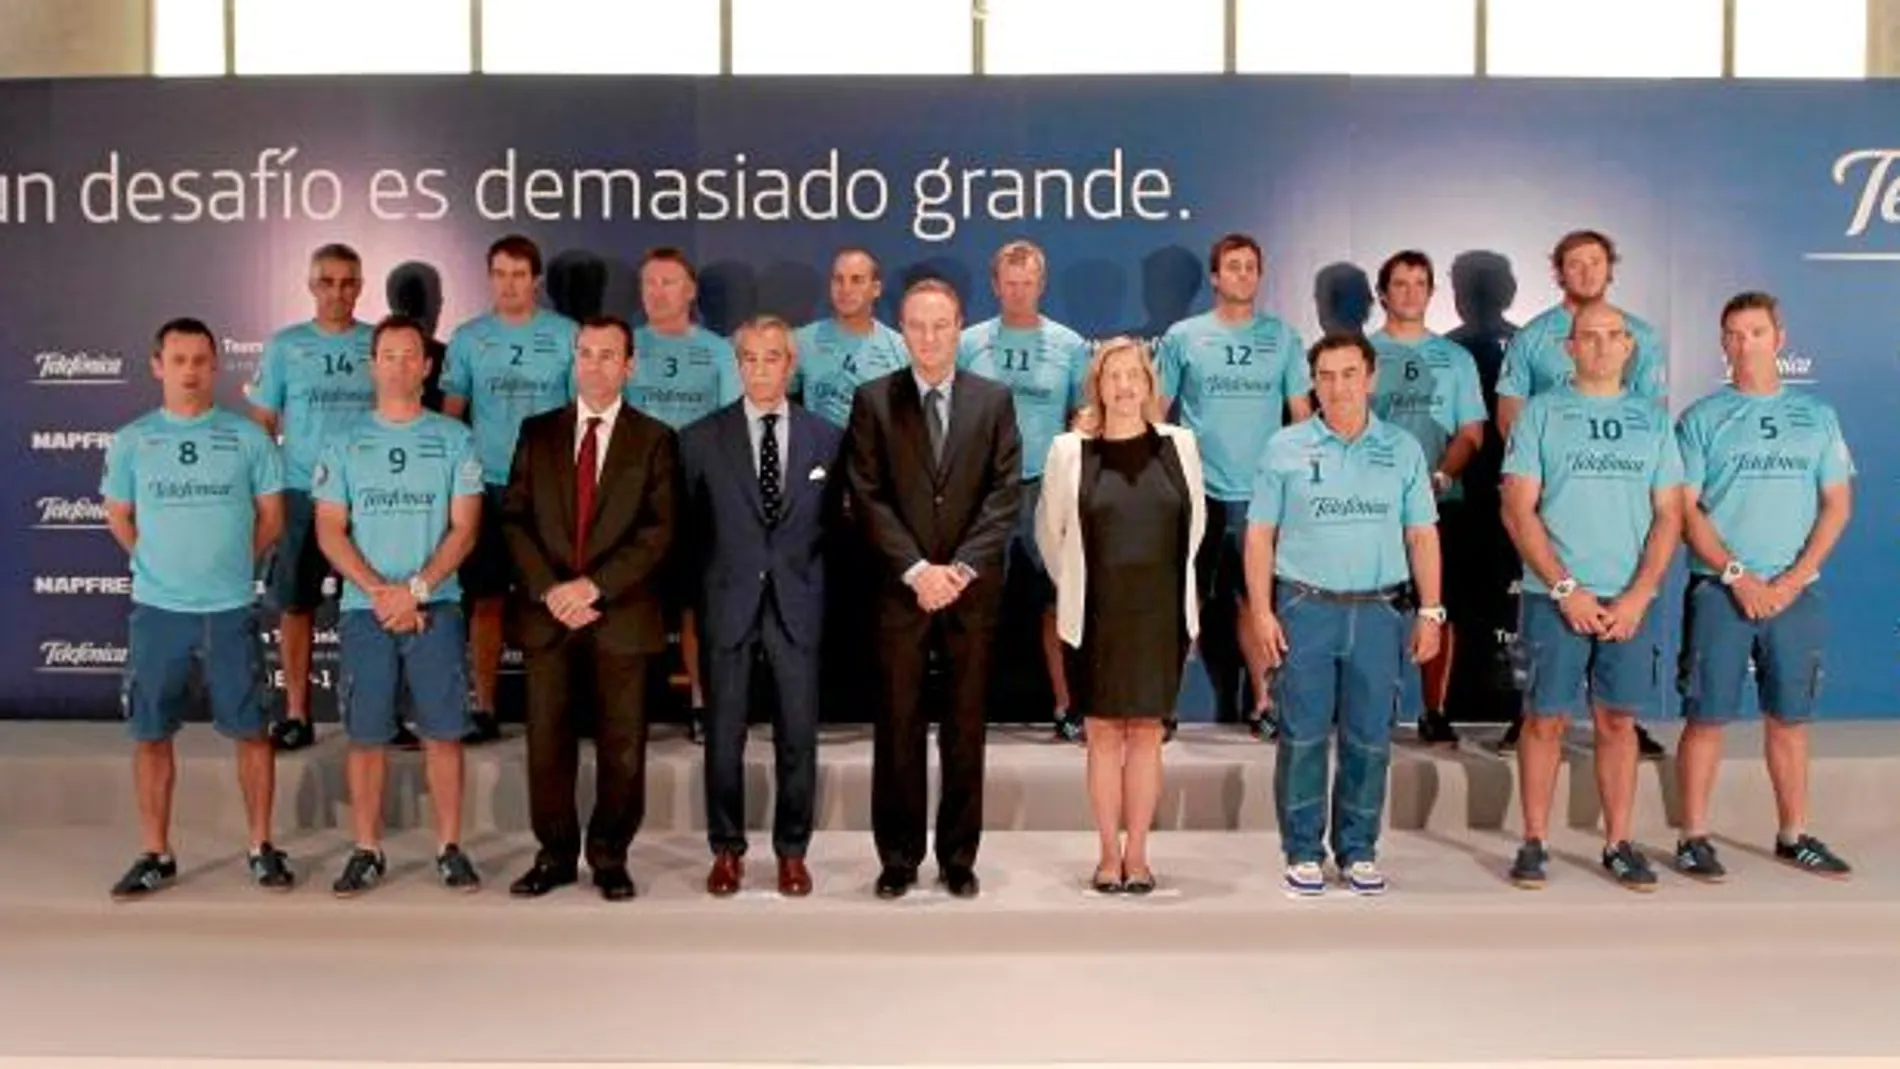 El presidente, Alberto Fabra, posó con todos los miembros del equipo Telefónica